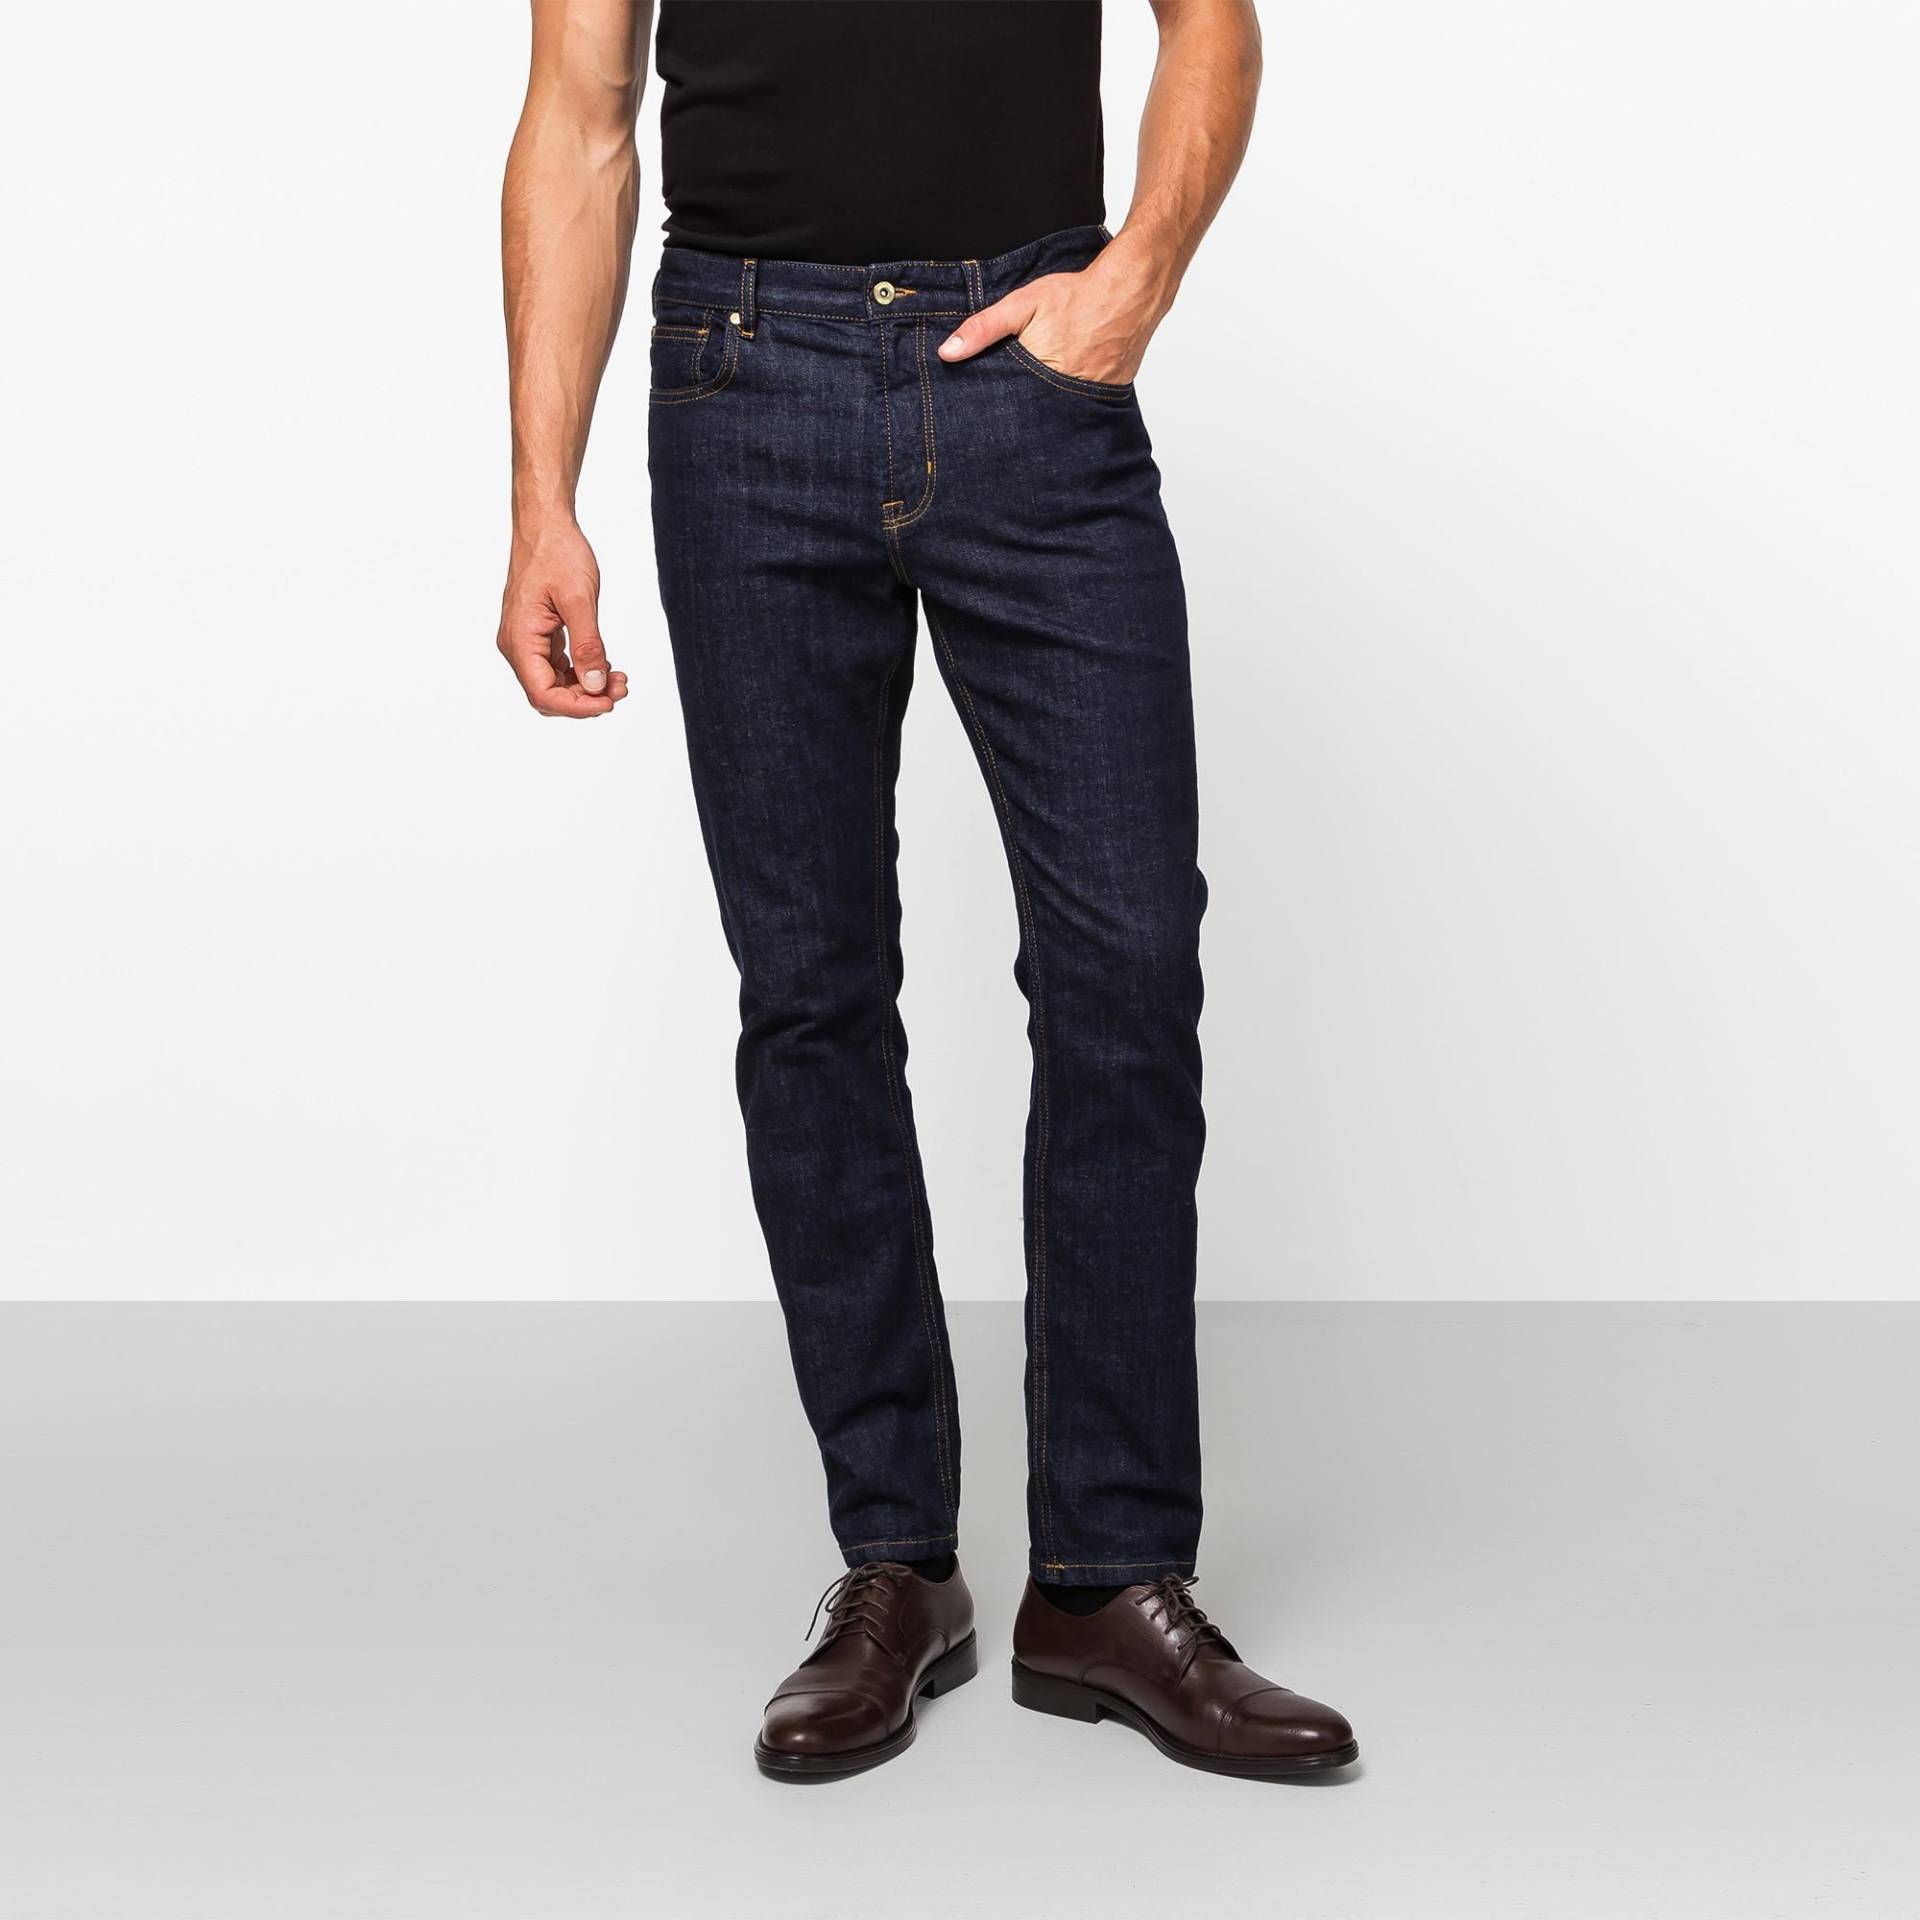 Jeans, Slim Fit Herren Blau Denim Dunkel L32/W35 von Manor Man